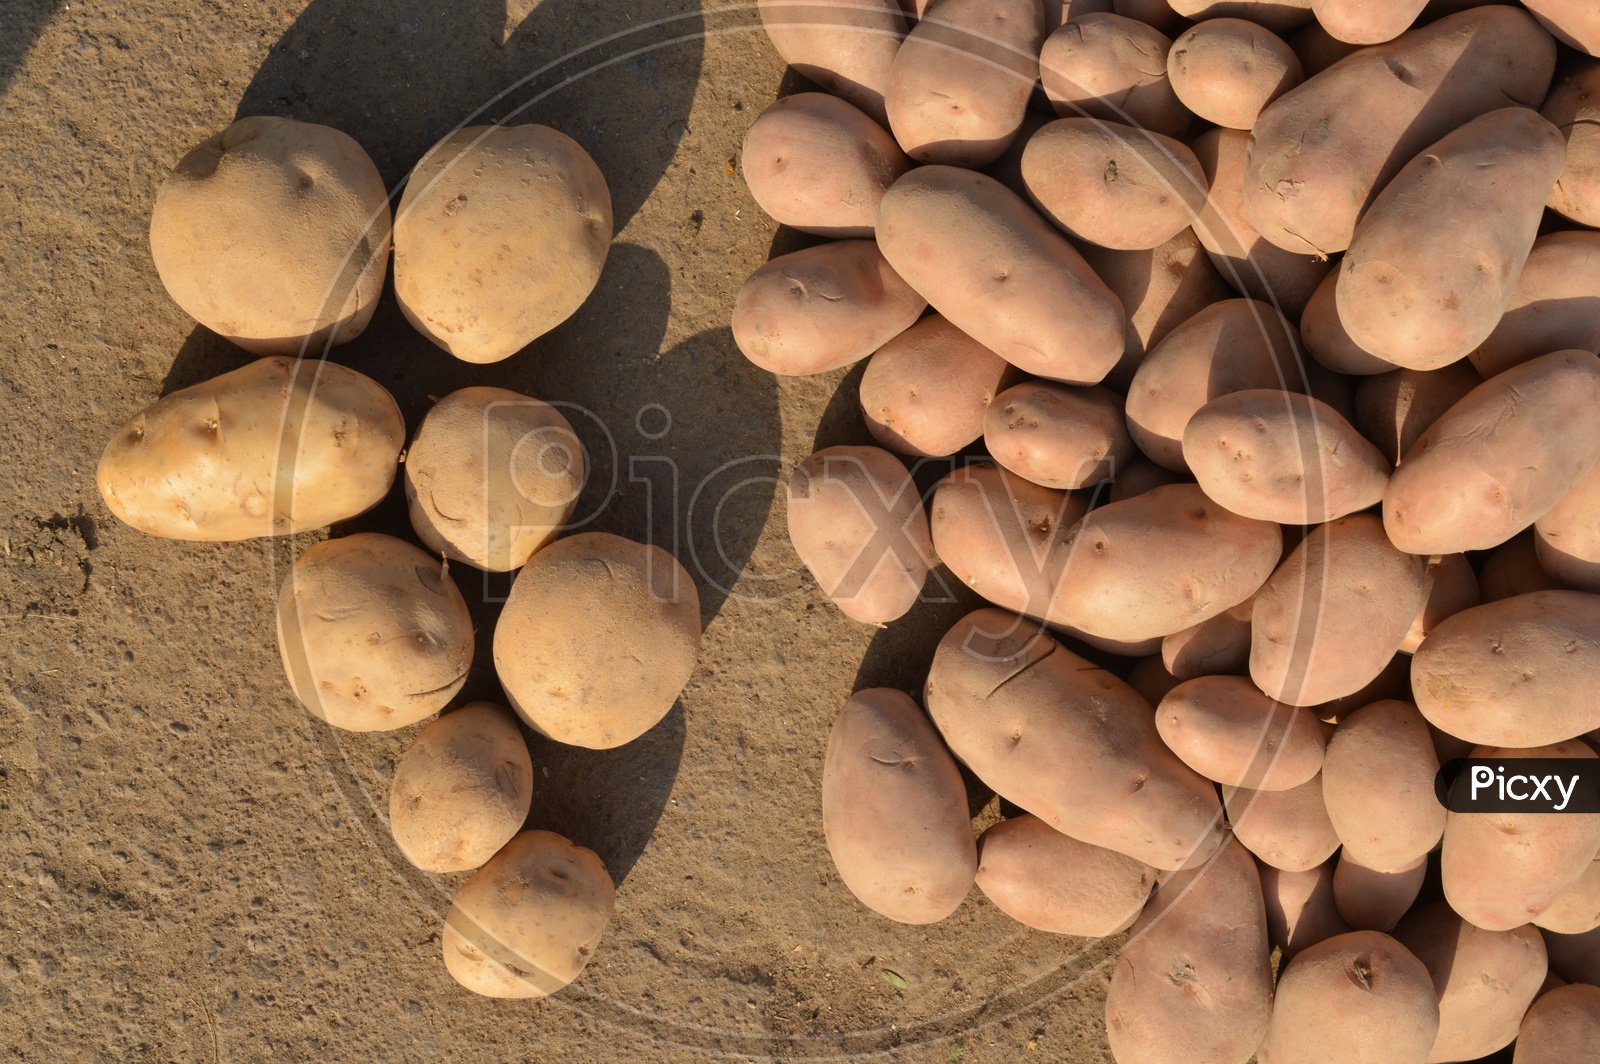 Potatoes Lying on Ground